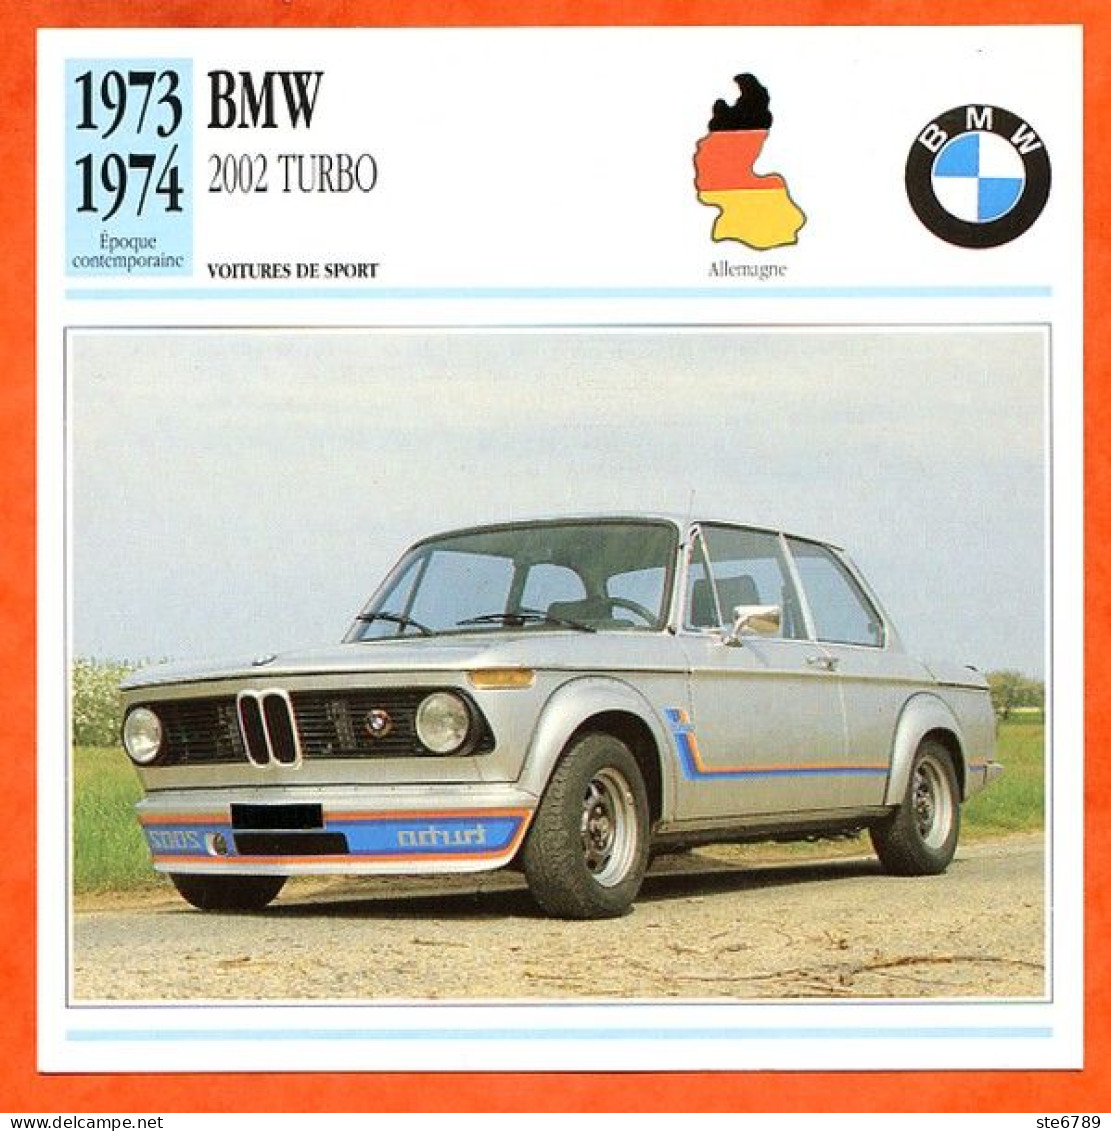 BMW 2002 TURBO 1973 Voiture De Sport Allemagne Fiche Technique Automobile - Cars